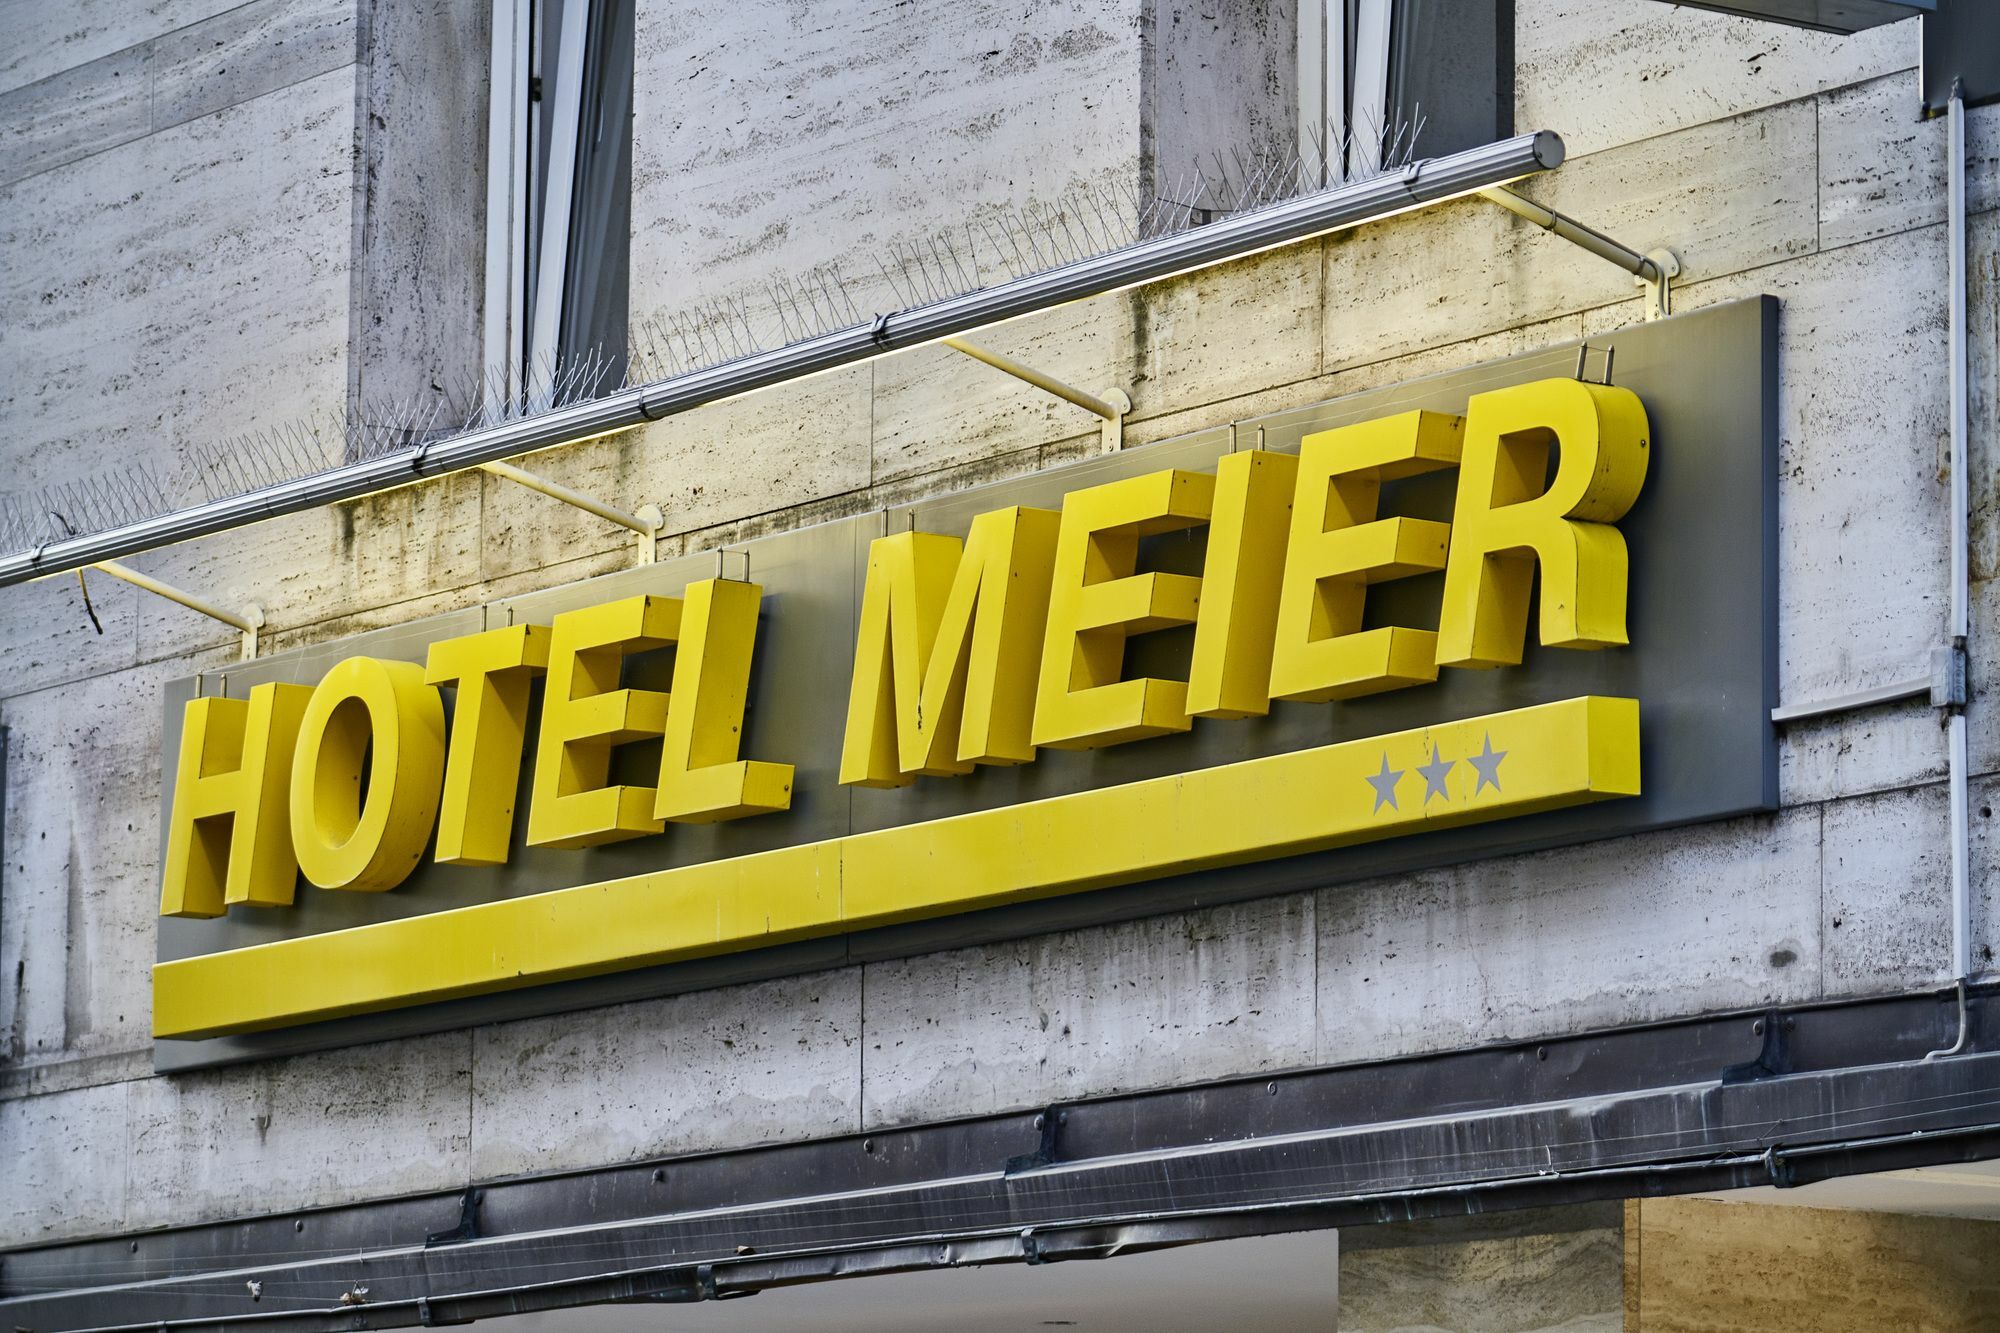 Hotel Meier City München Exterior foto